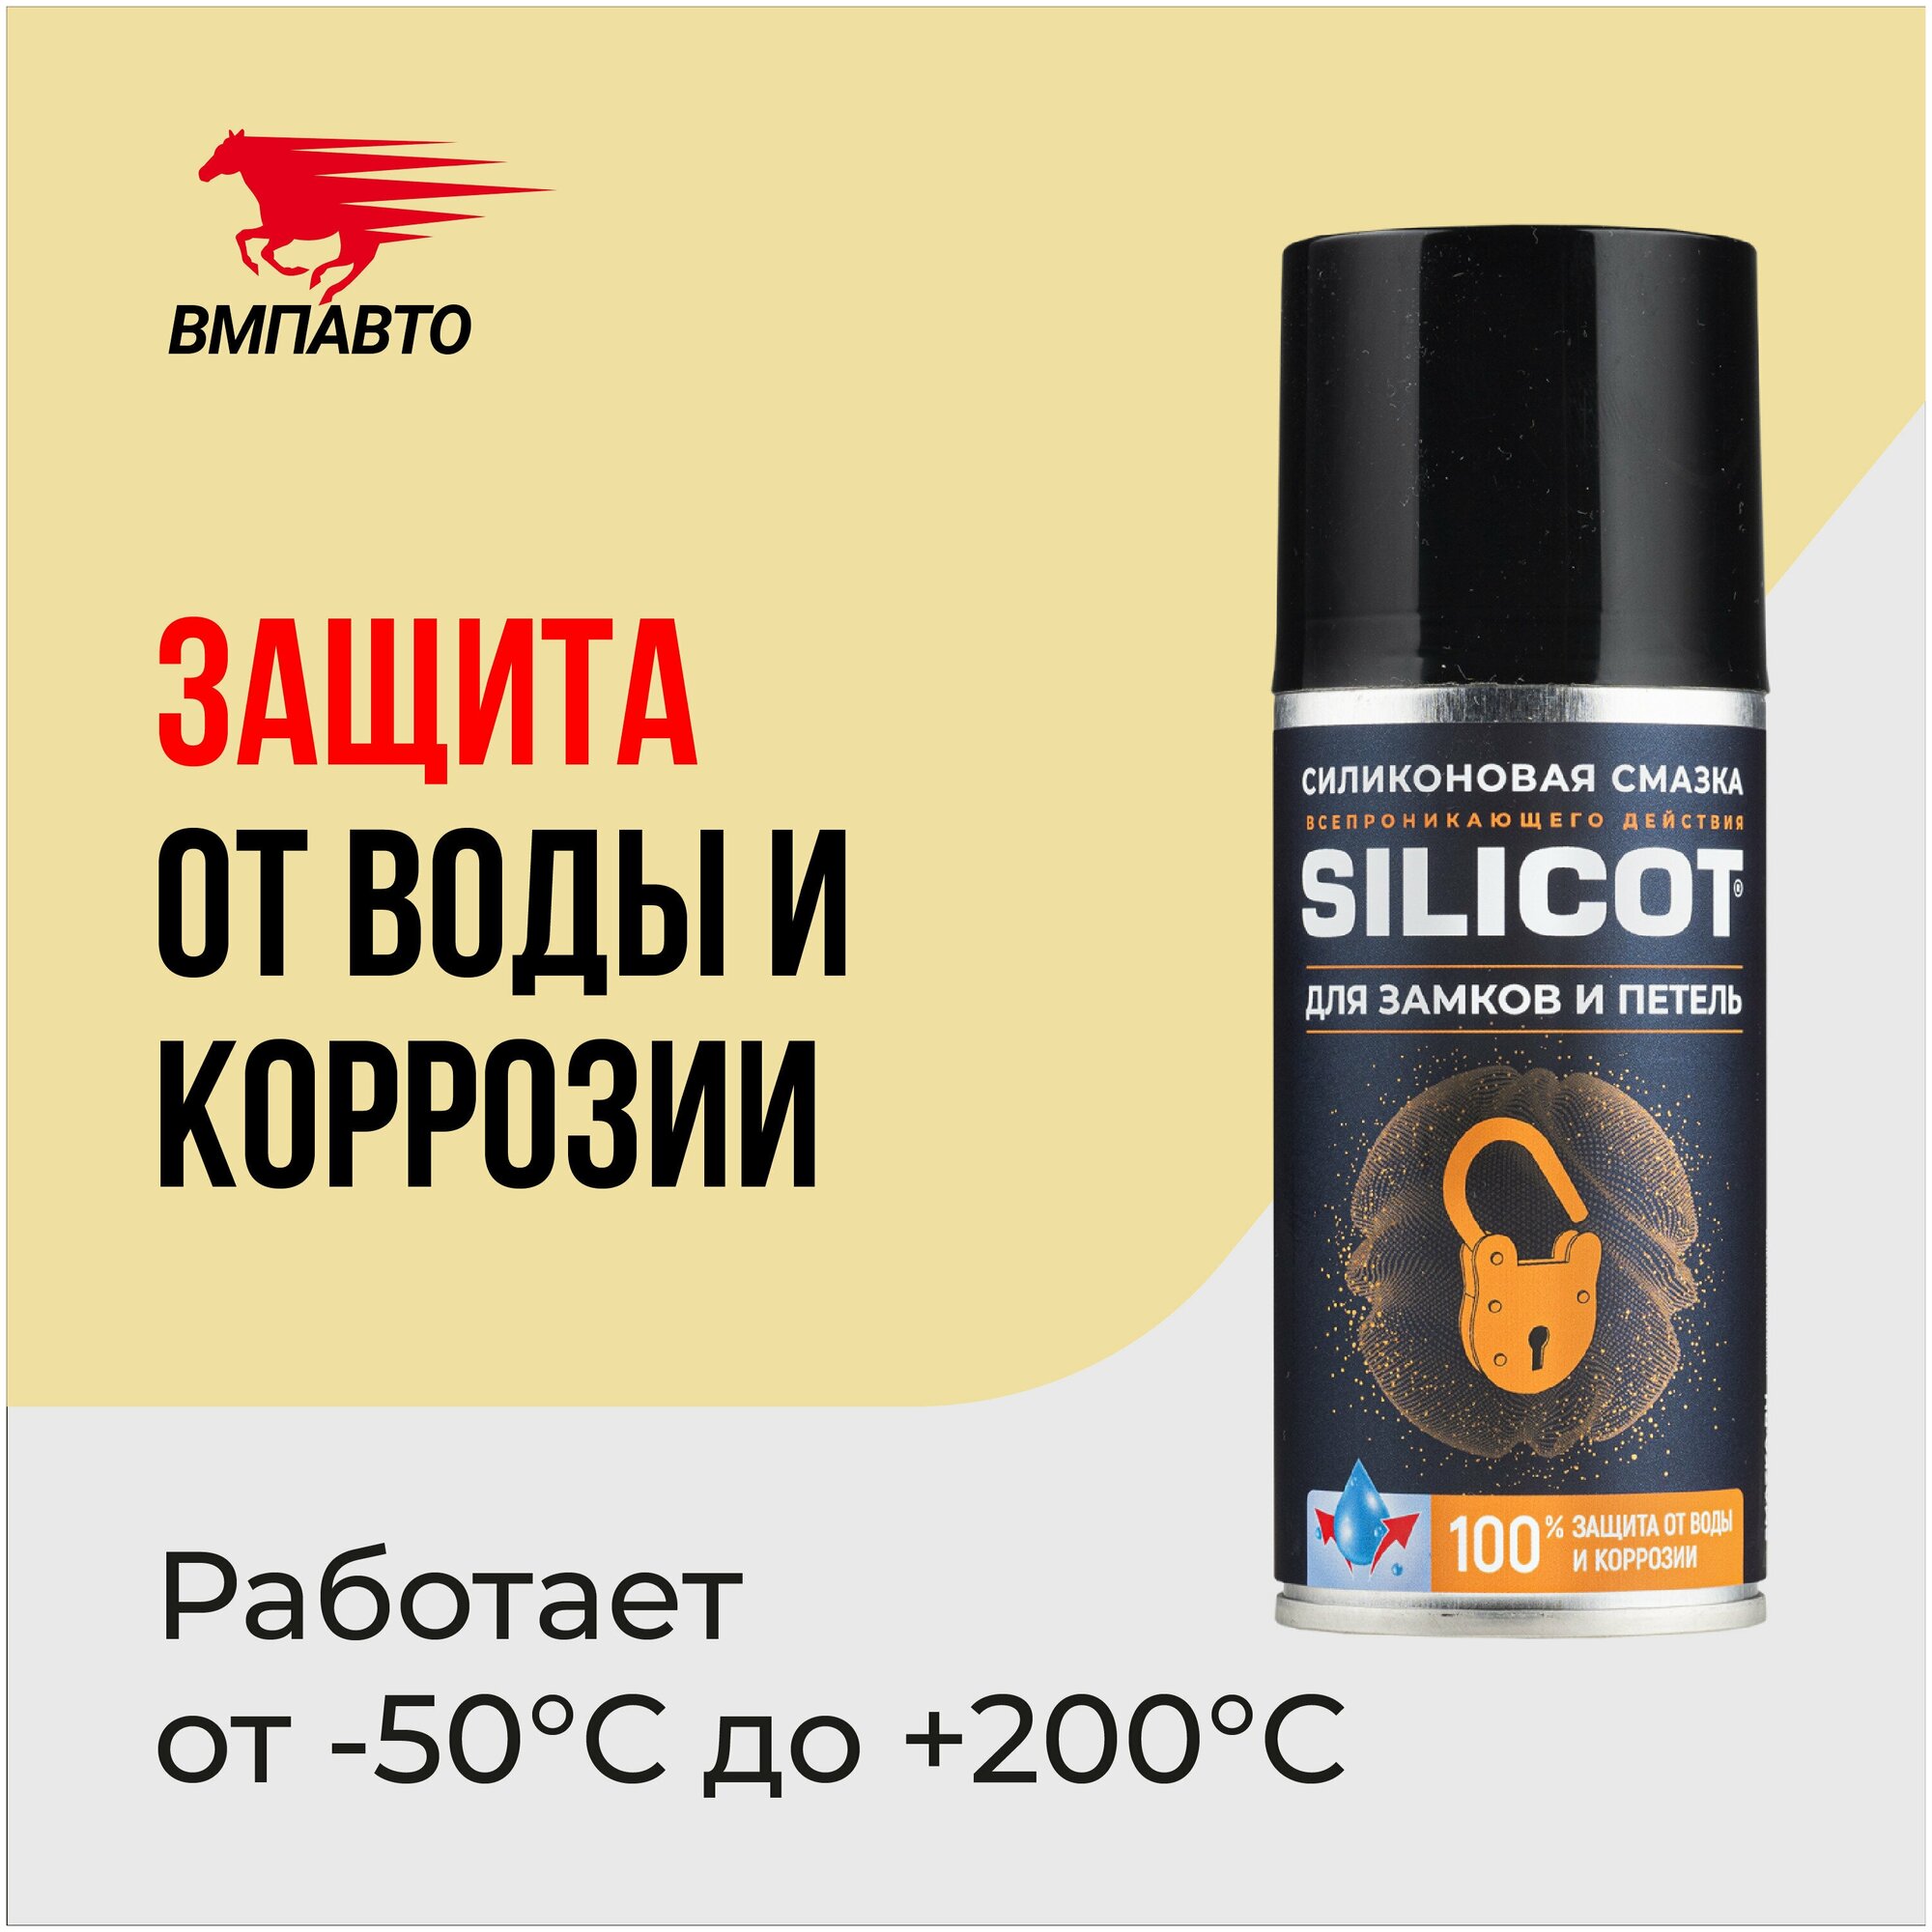 Автомобильная смазка ВМПАВТО Silicot для замков и петель